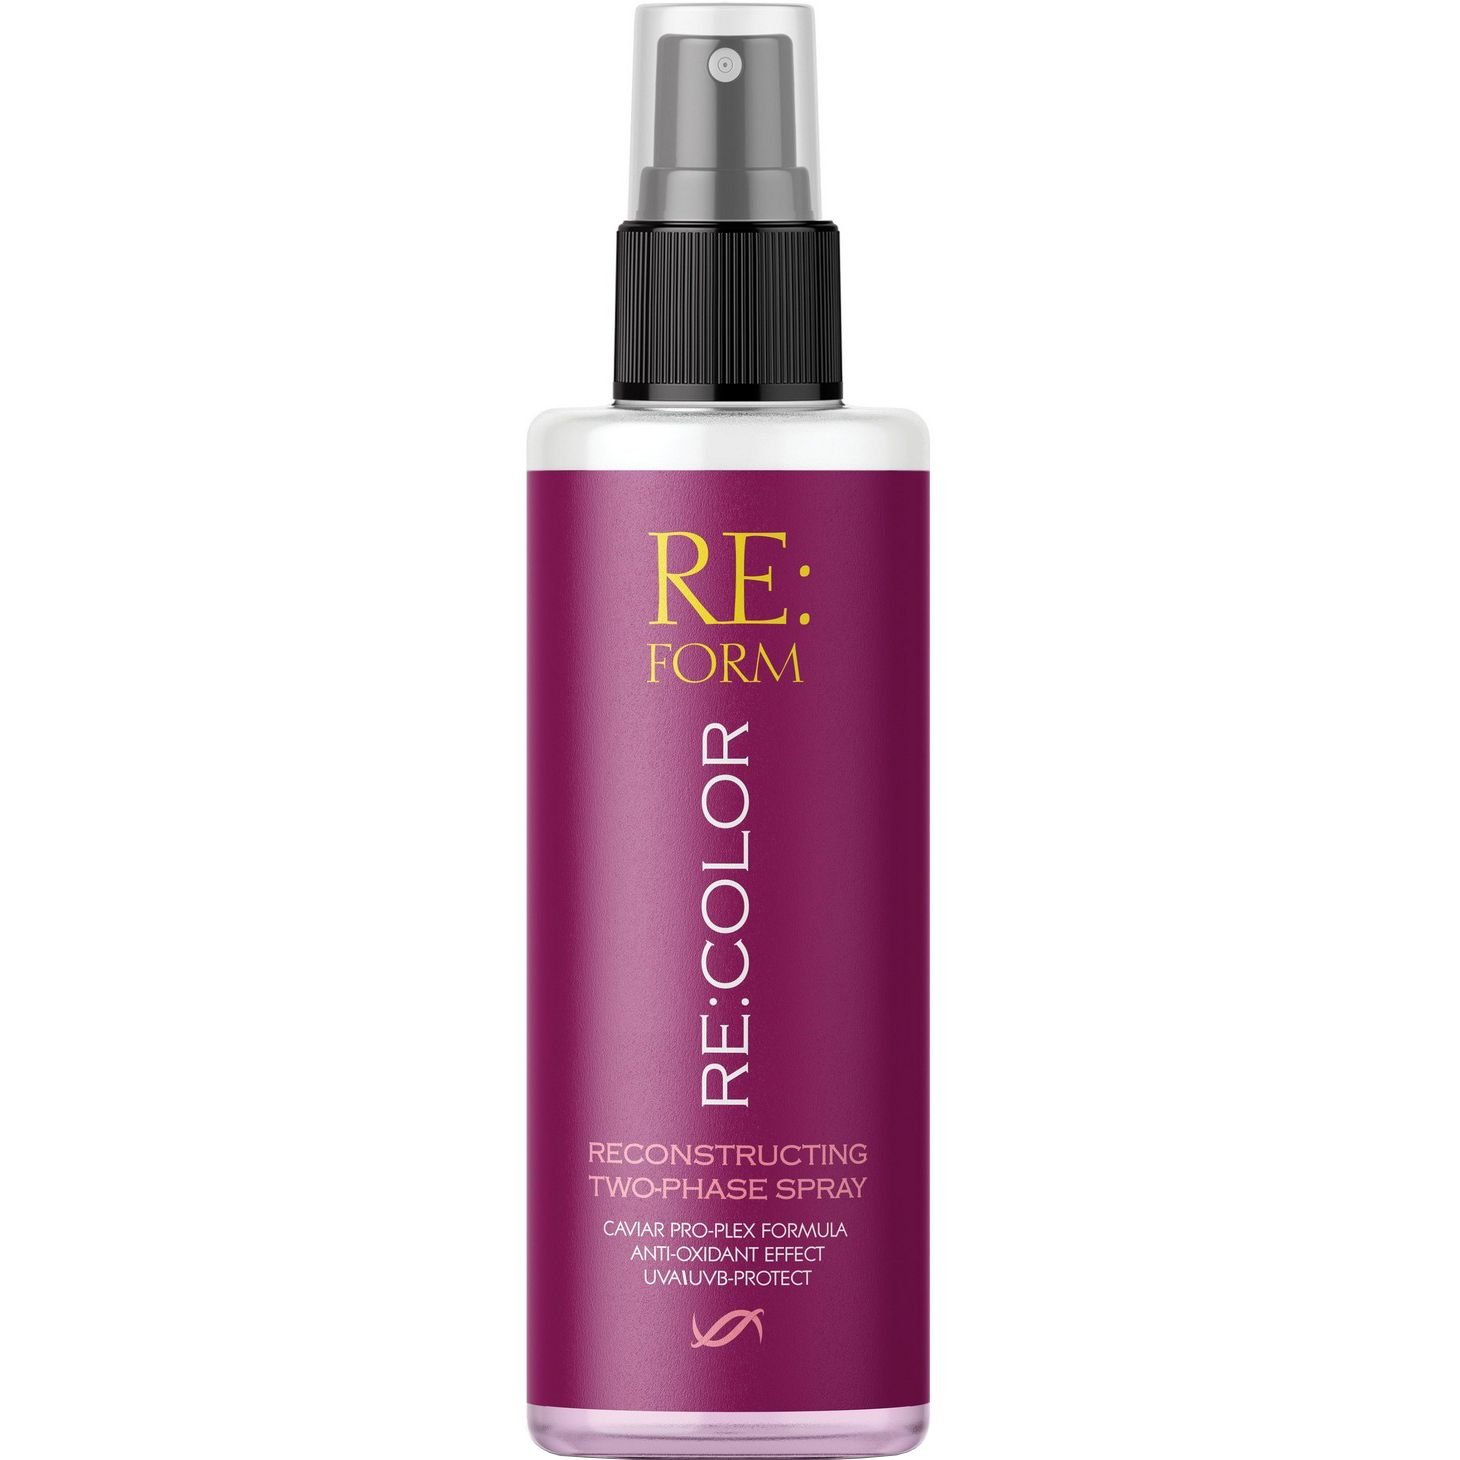 Реконструюючий двофазний спрей Re:form Re:color Збереження кольору та відновлення фарбованого волосся, 200 мл - фото 1